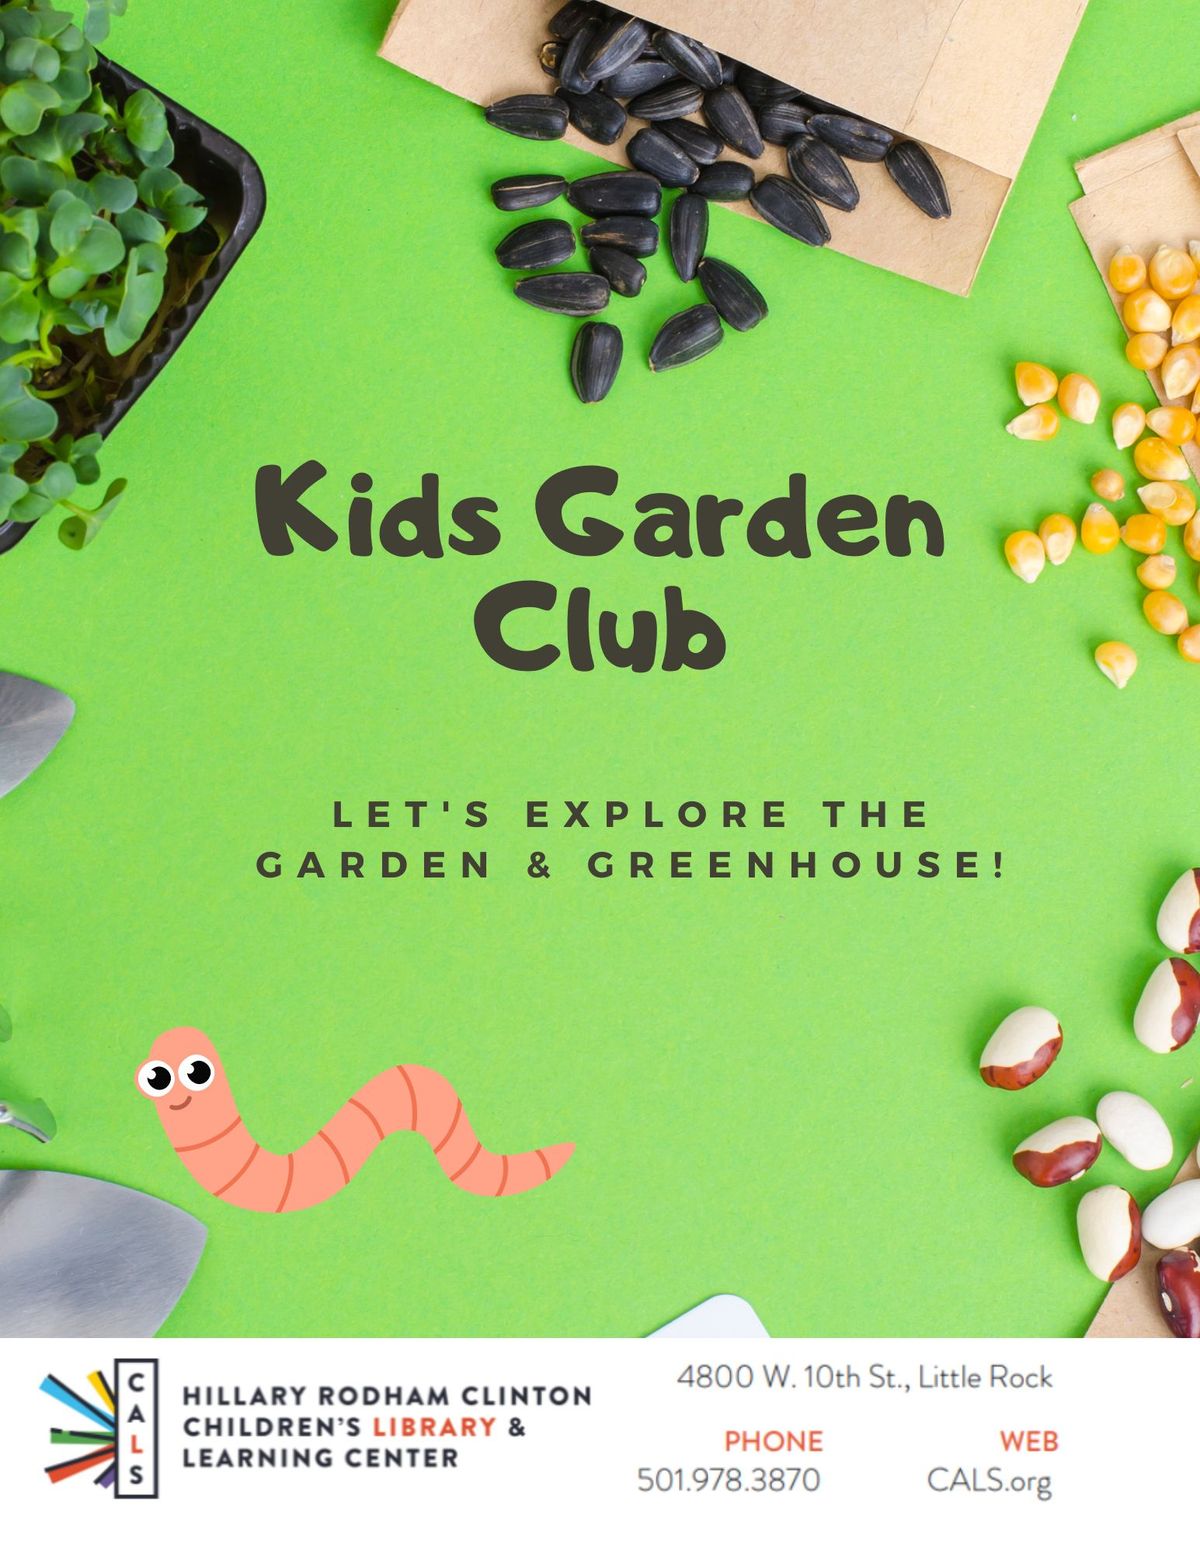 Kids Garden Club